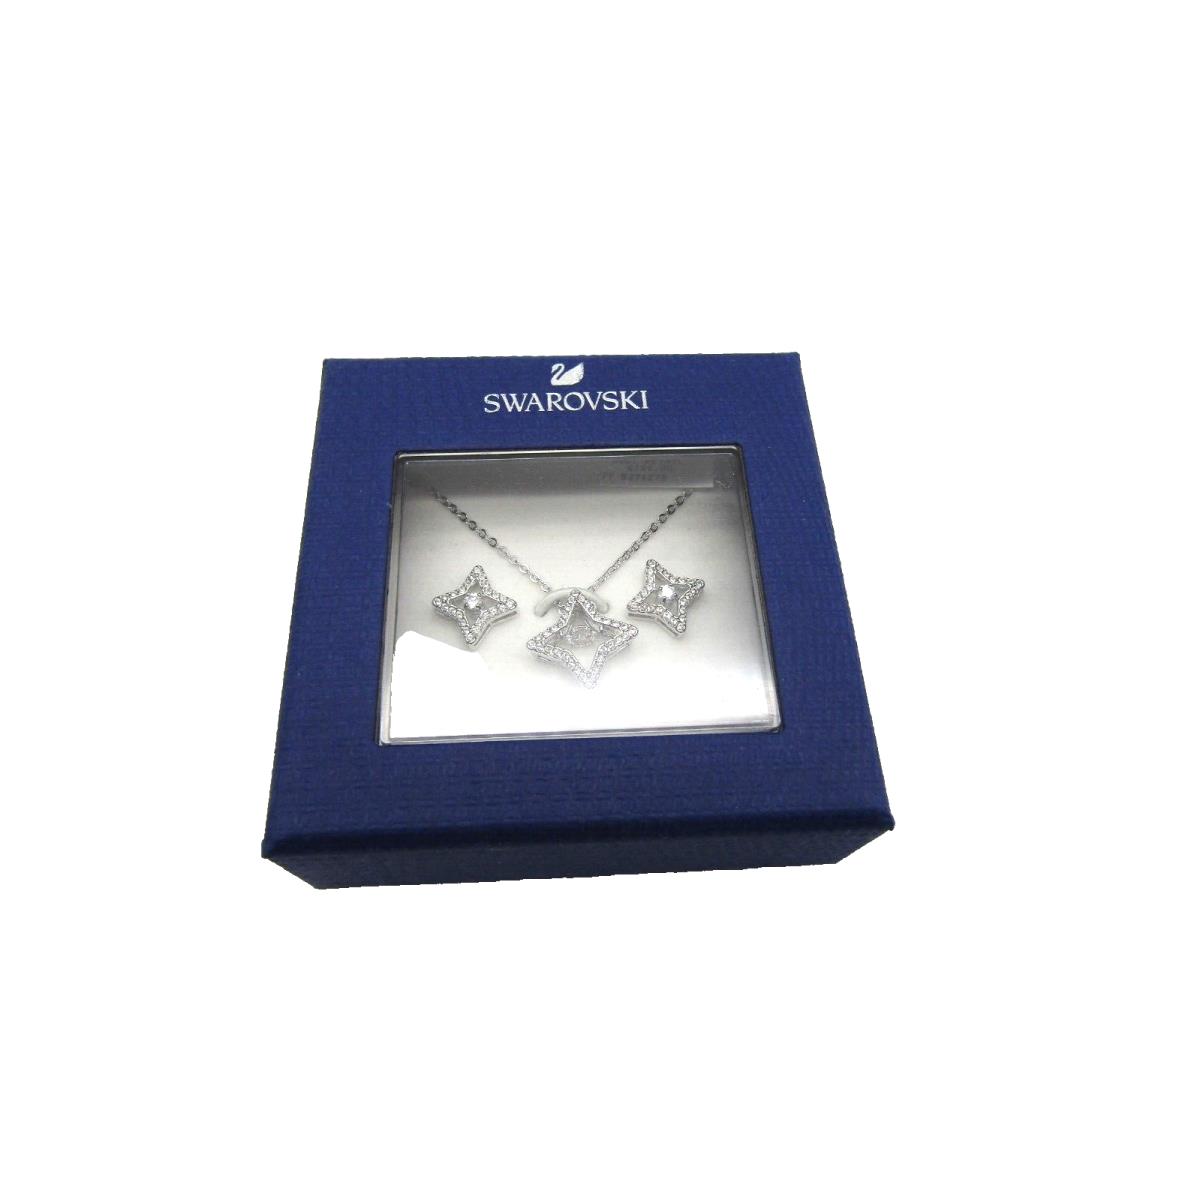 Swarovski Crystal Necklace/stud Earring Set Retails For